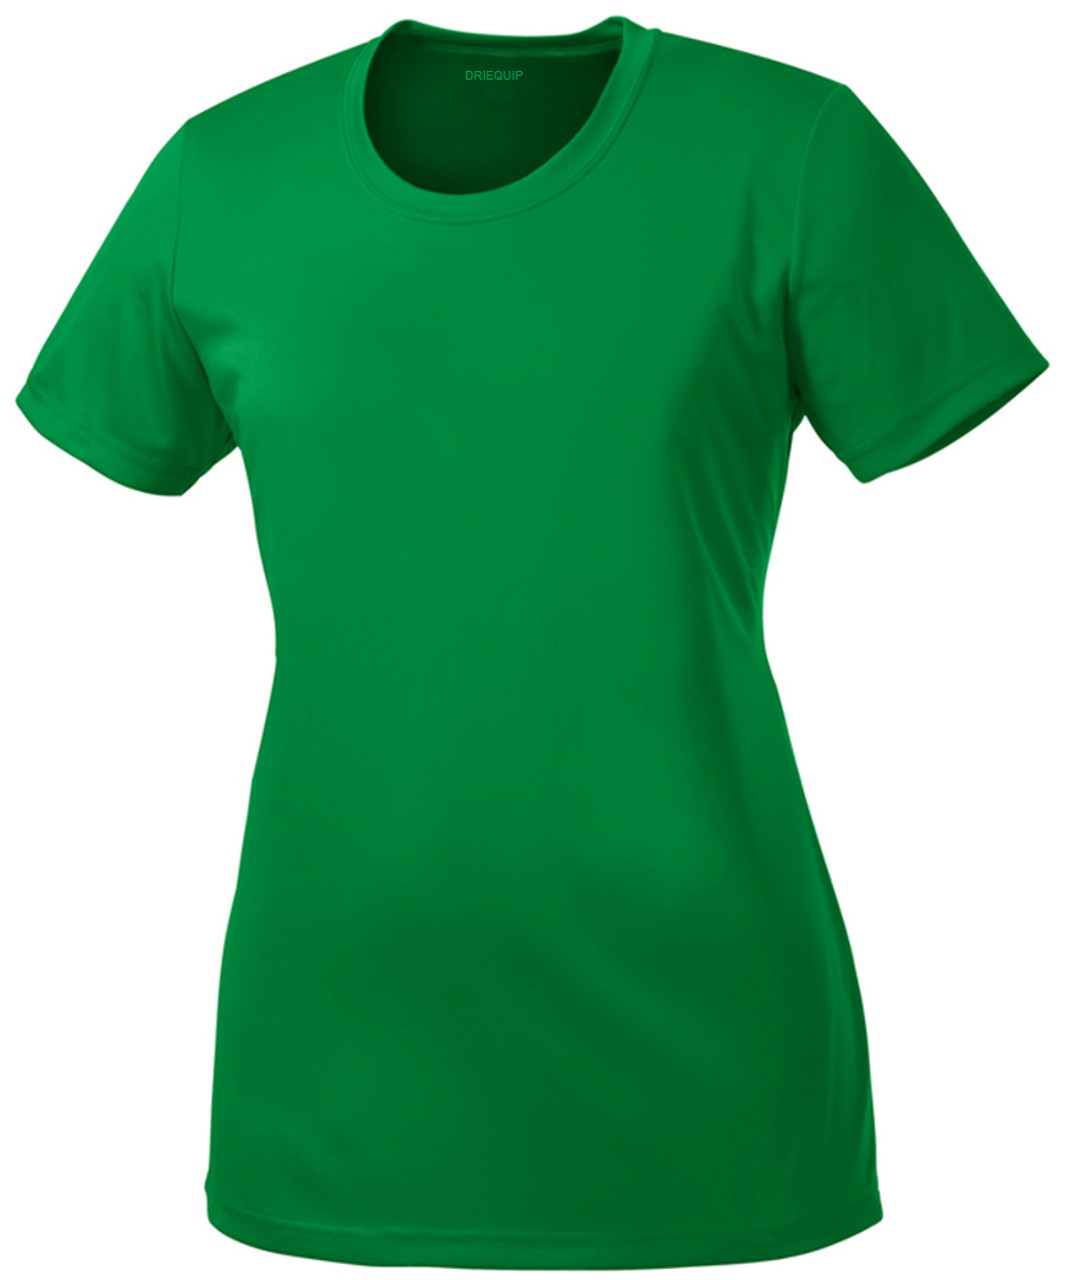 Sport Tek Adult Female Women Plain Short Sleeves T-Shirt Neon Green 2X-Large